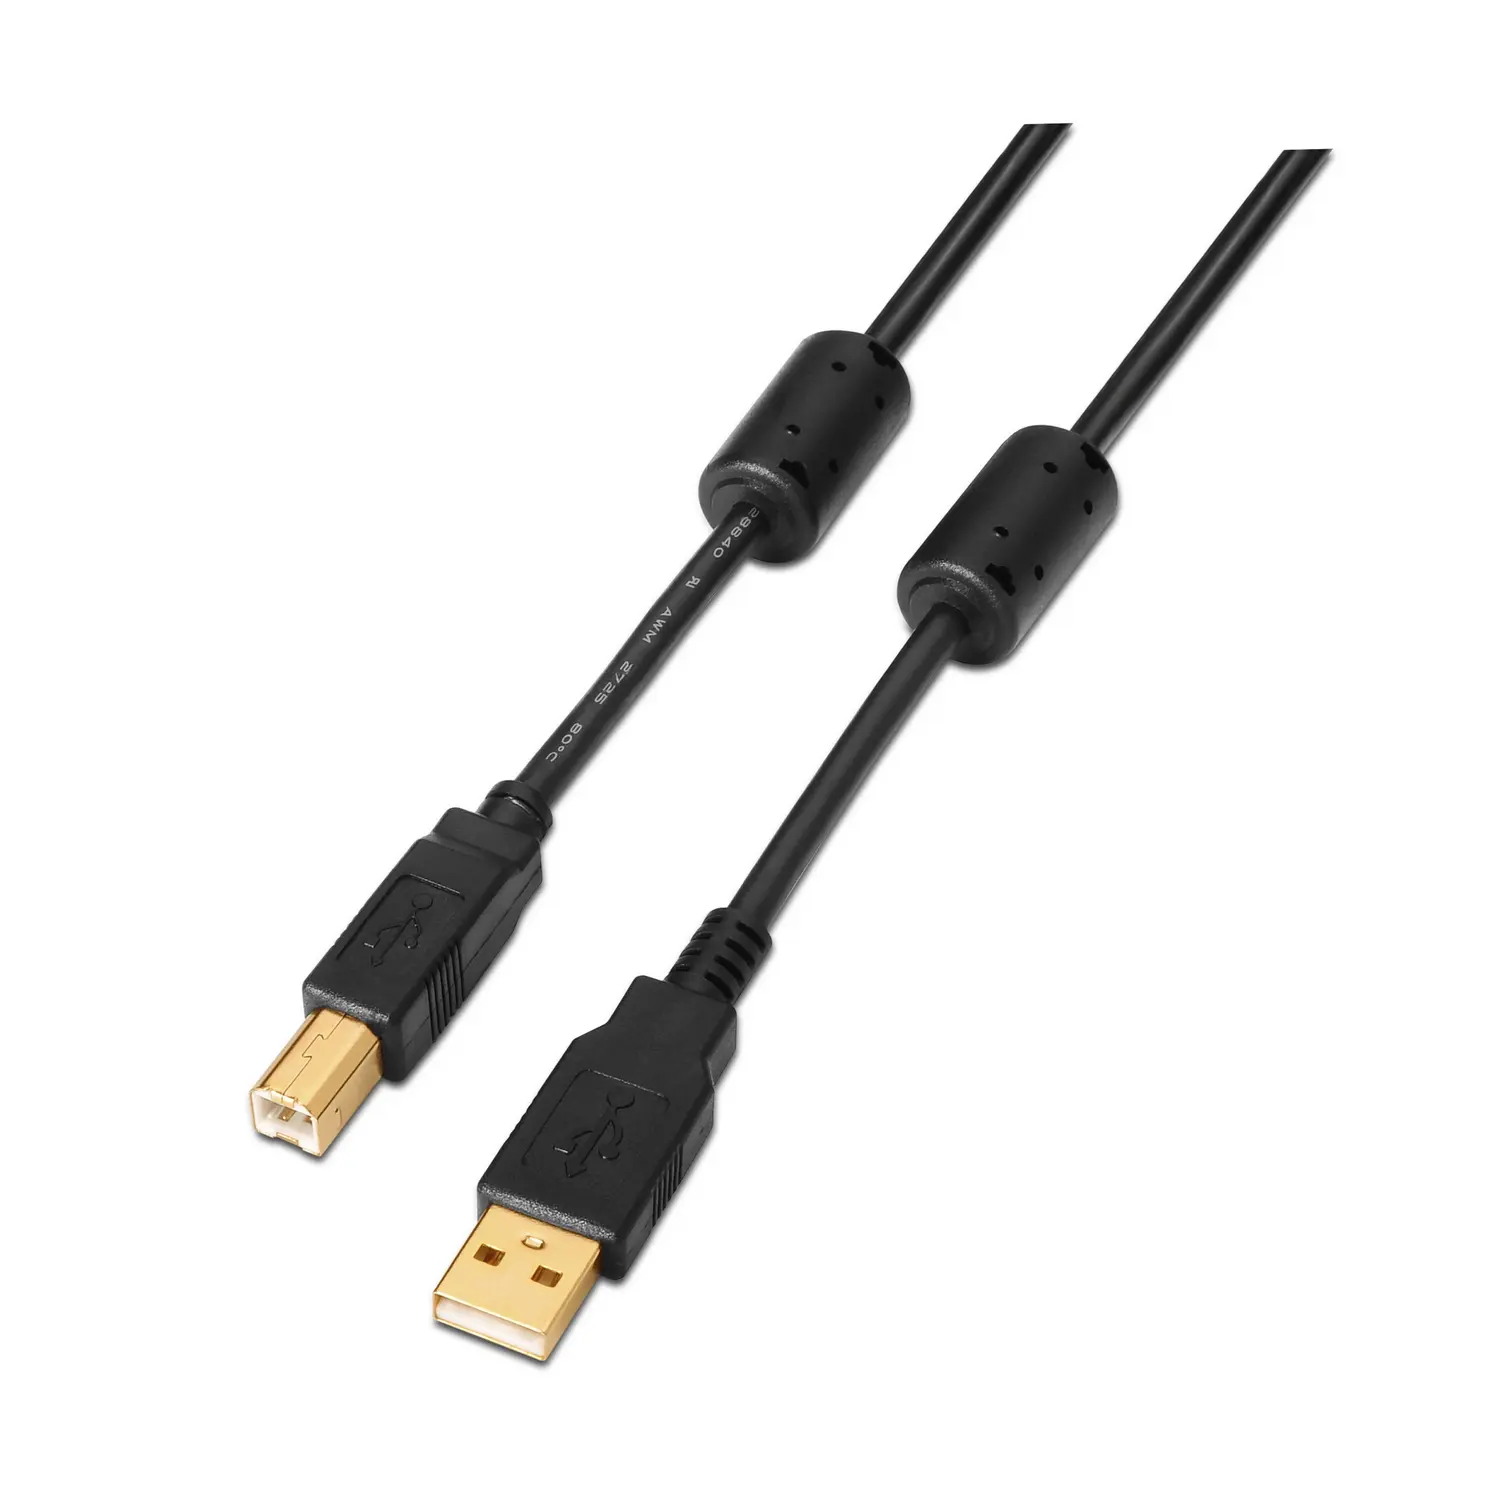 Aisens Cable USB 2.0 Impresora Super Alta Calidad con Ferrita - Tipo A Macho a Tipo B Macho - 2.0m -